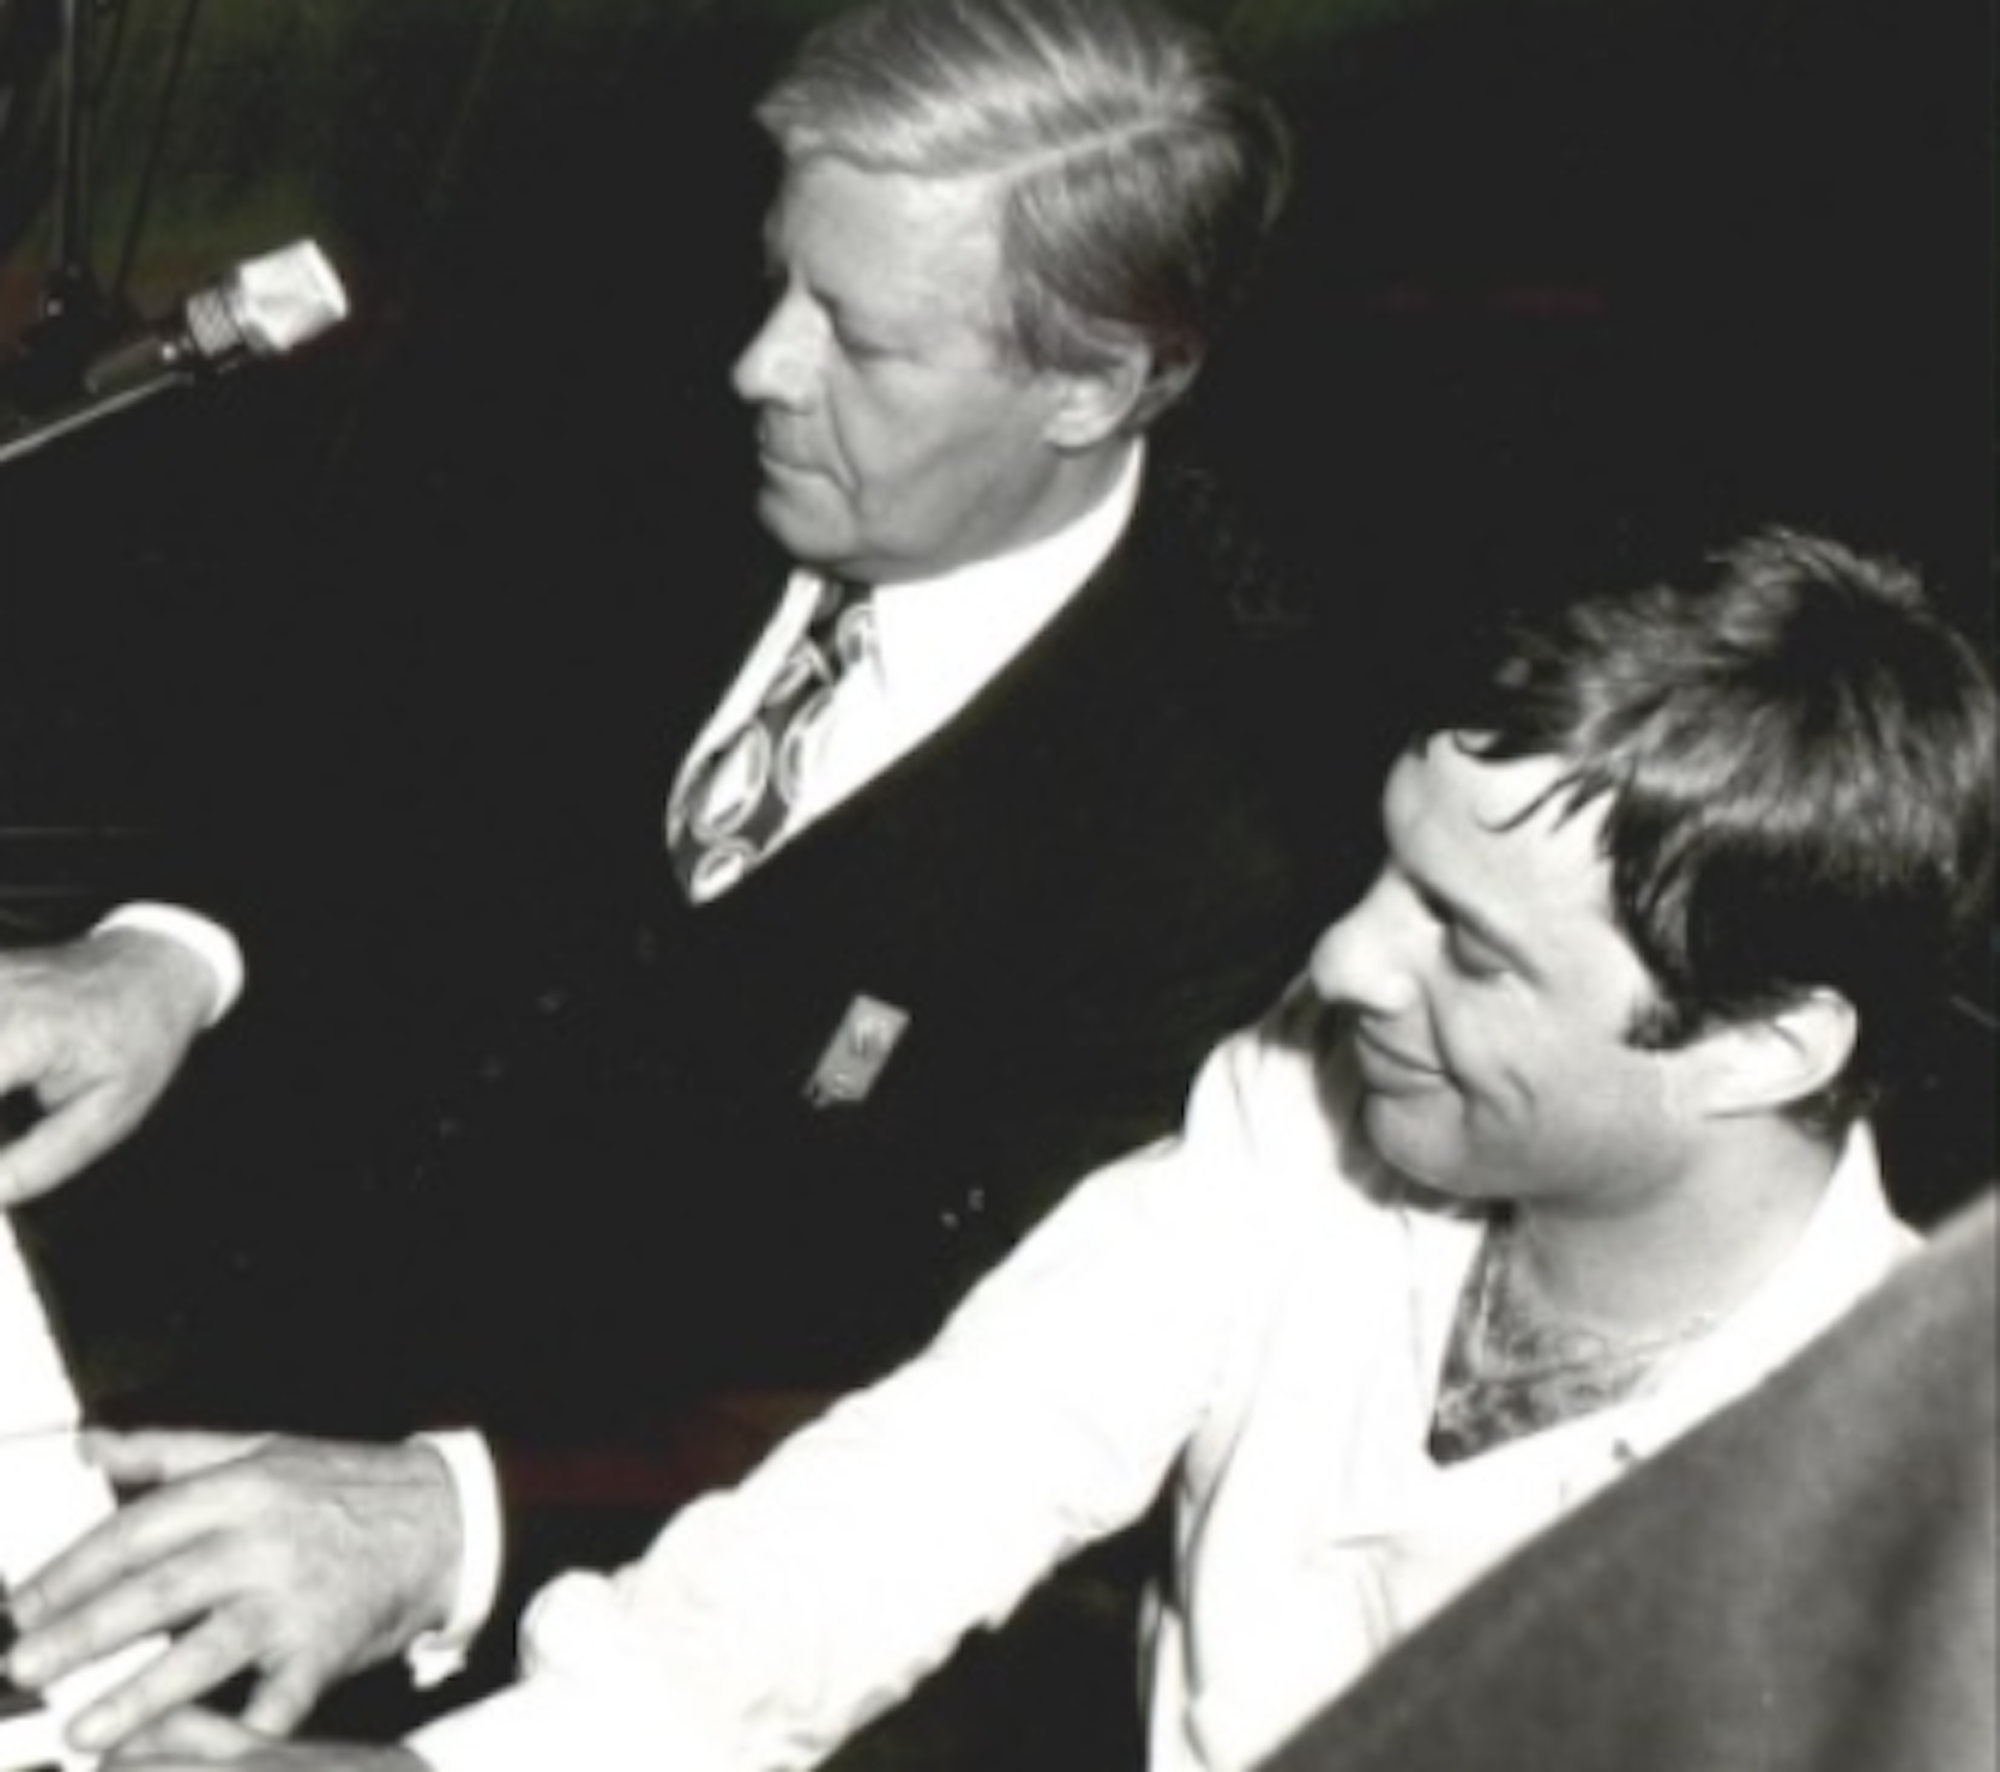 Moshe Fleisher und Helmut Schmidt spielen Klavier.